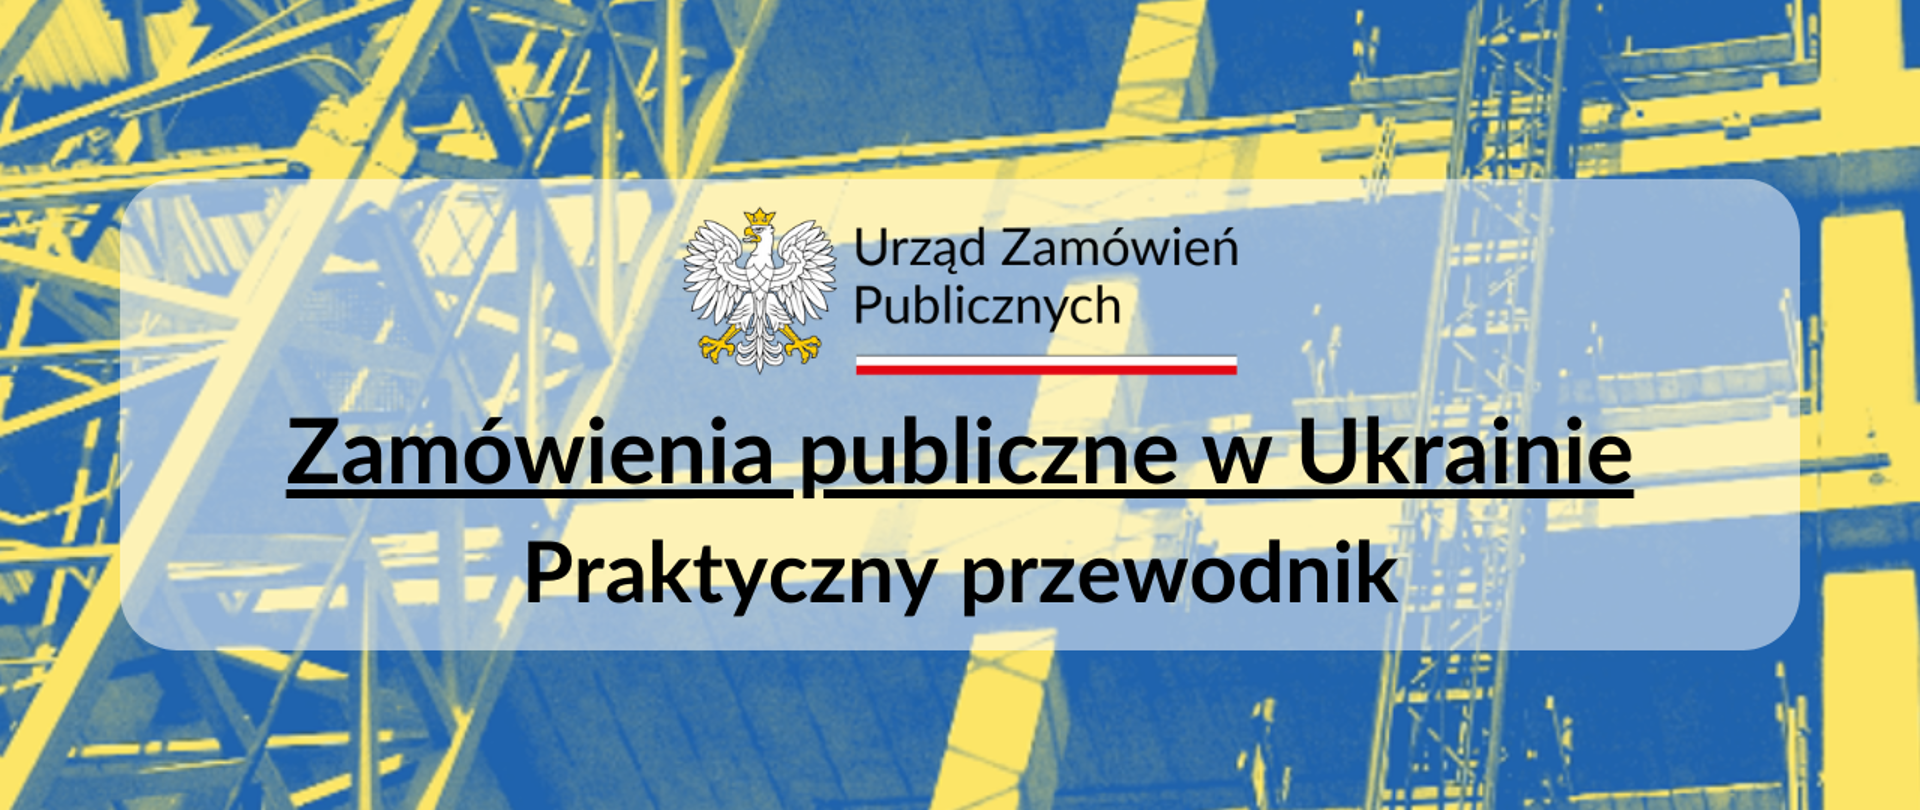 Zamówienia publiczne w Ukrainie – praktyczny przewodnik